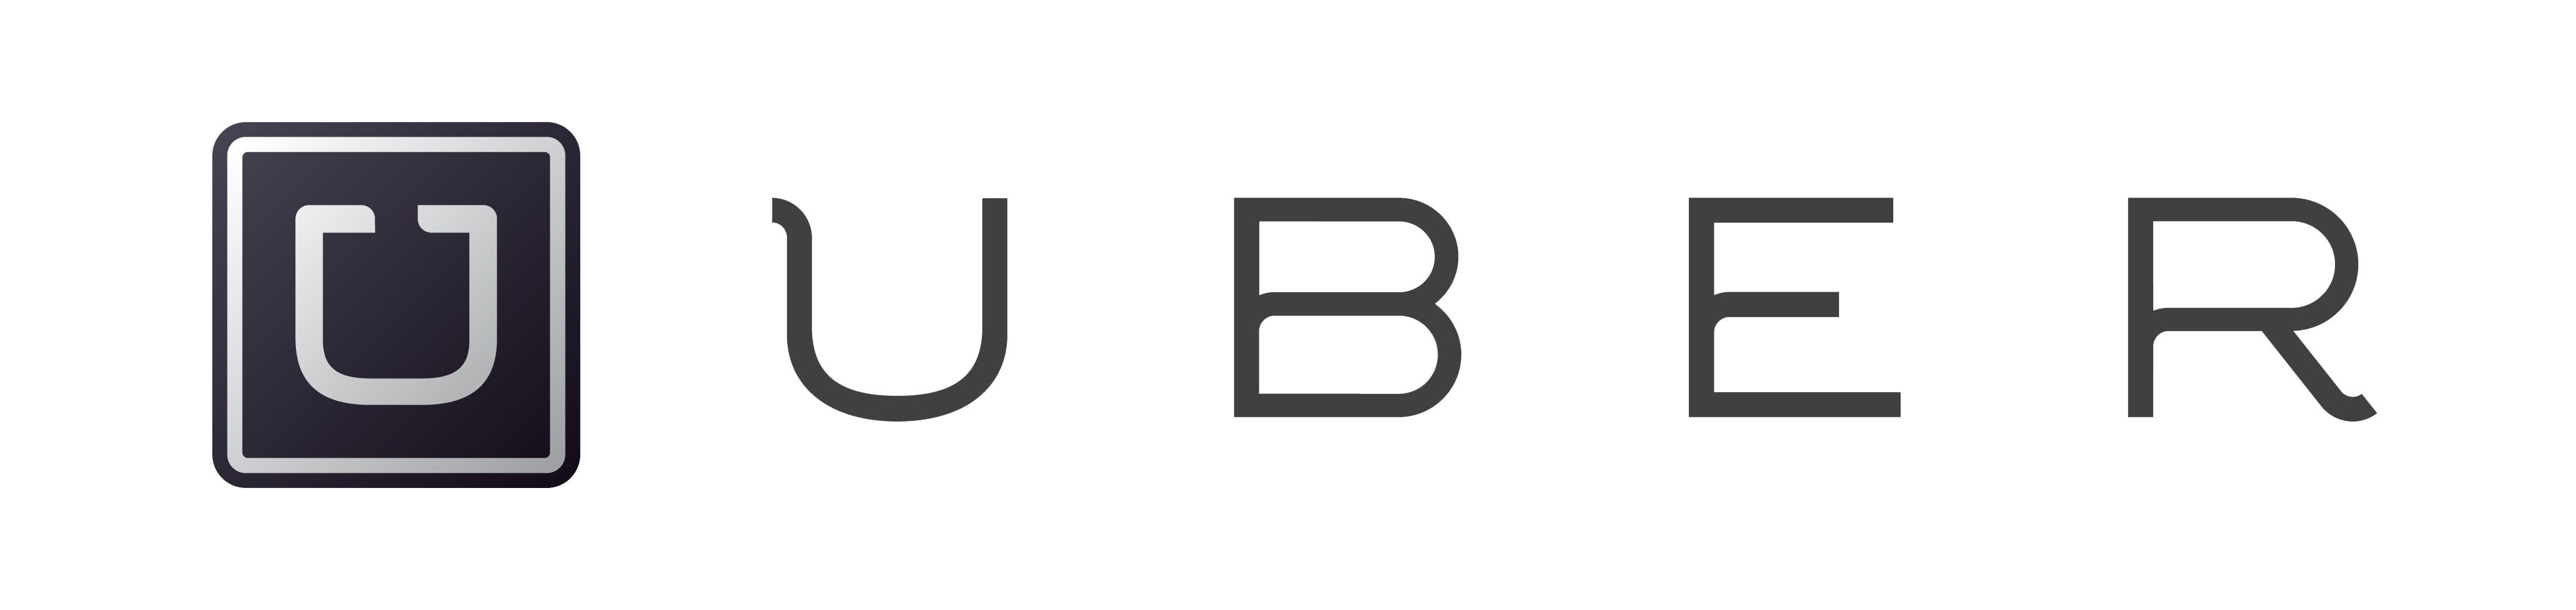 Imagem do logotipo do Uber png